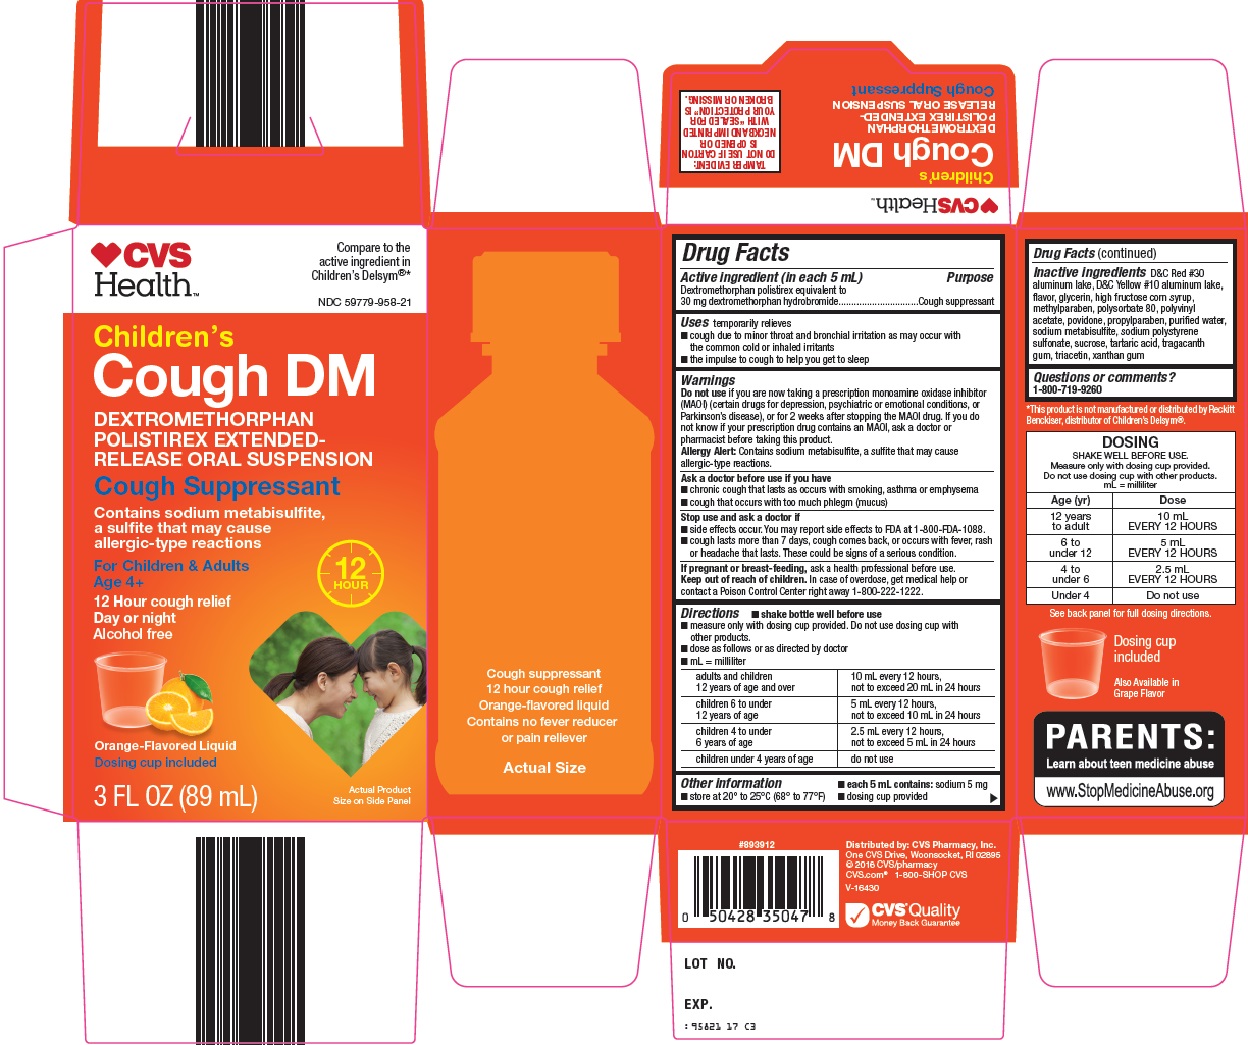 CVS Health Cough DM image